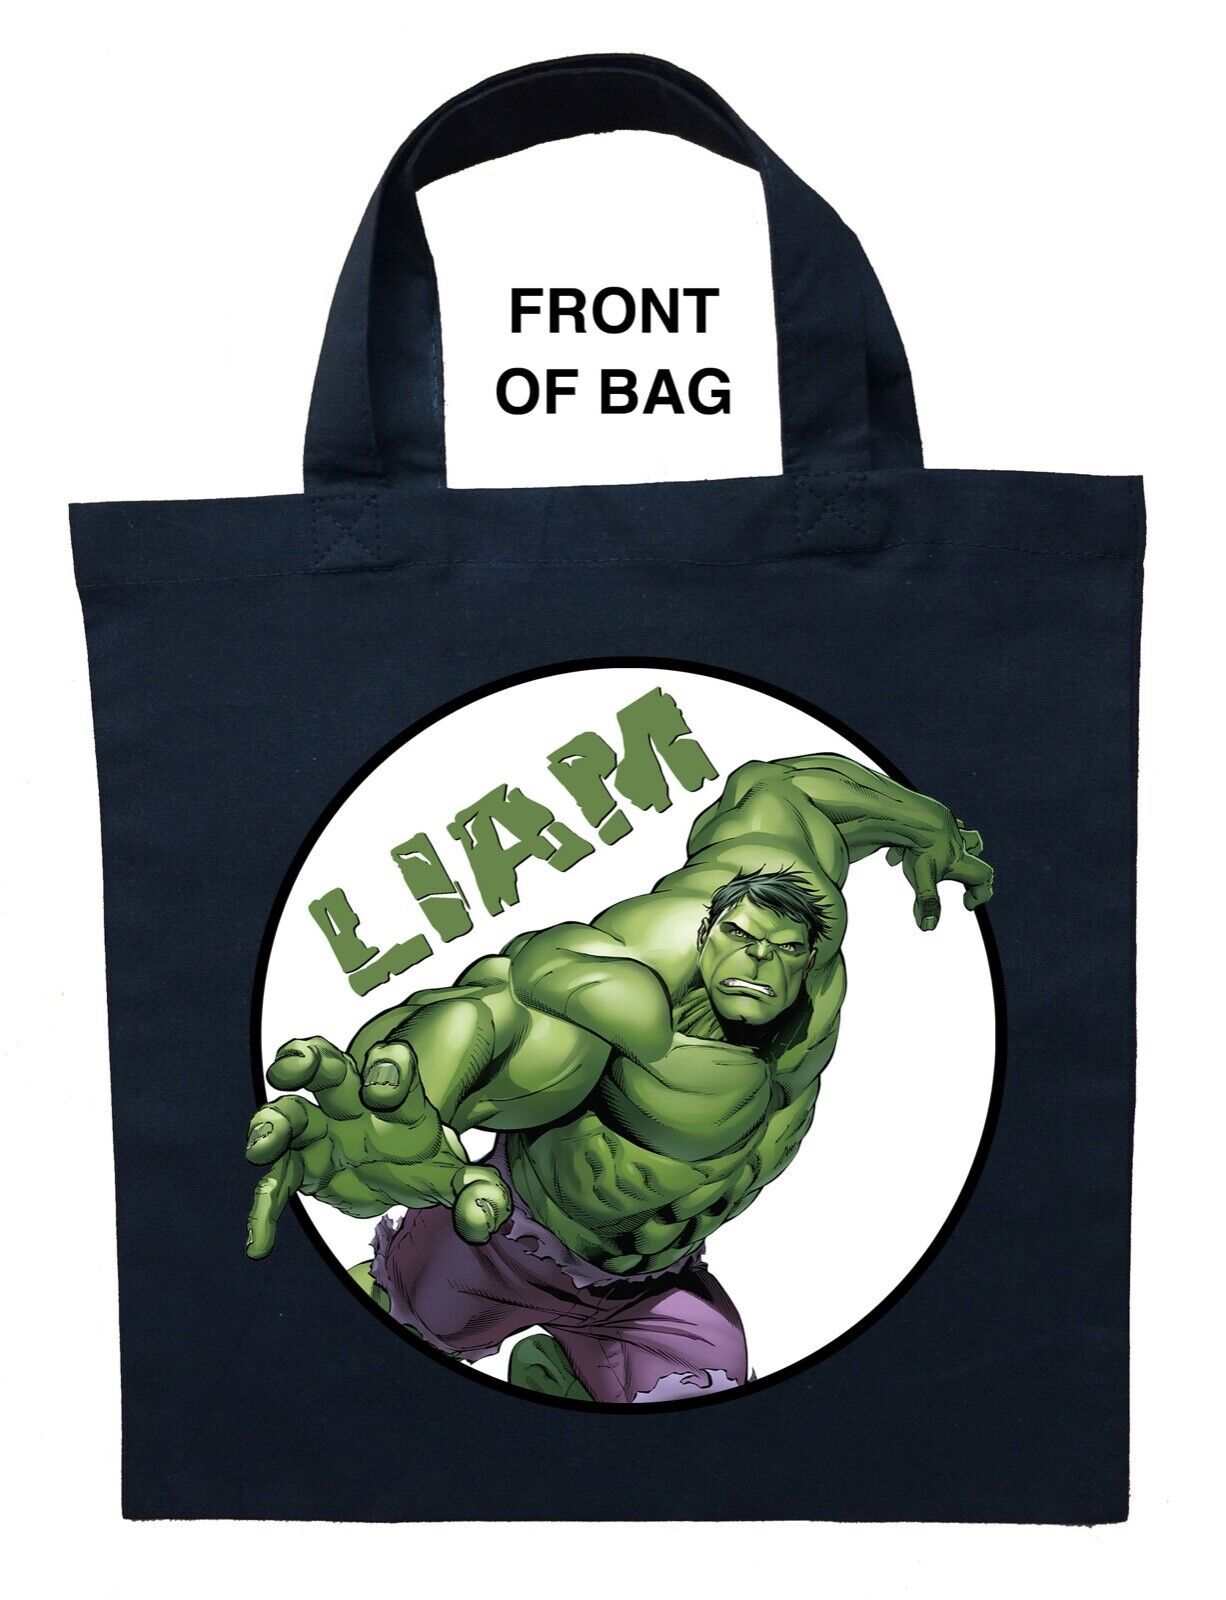 Incredible Hulk Trick or Treat Bag, Personalized Incredible Hulk Halloween Bag